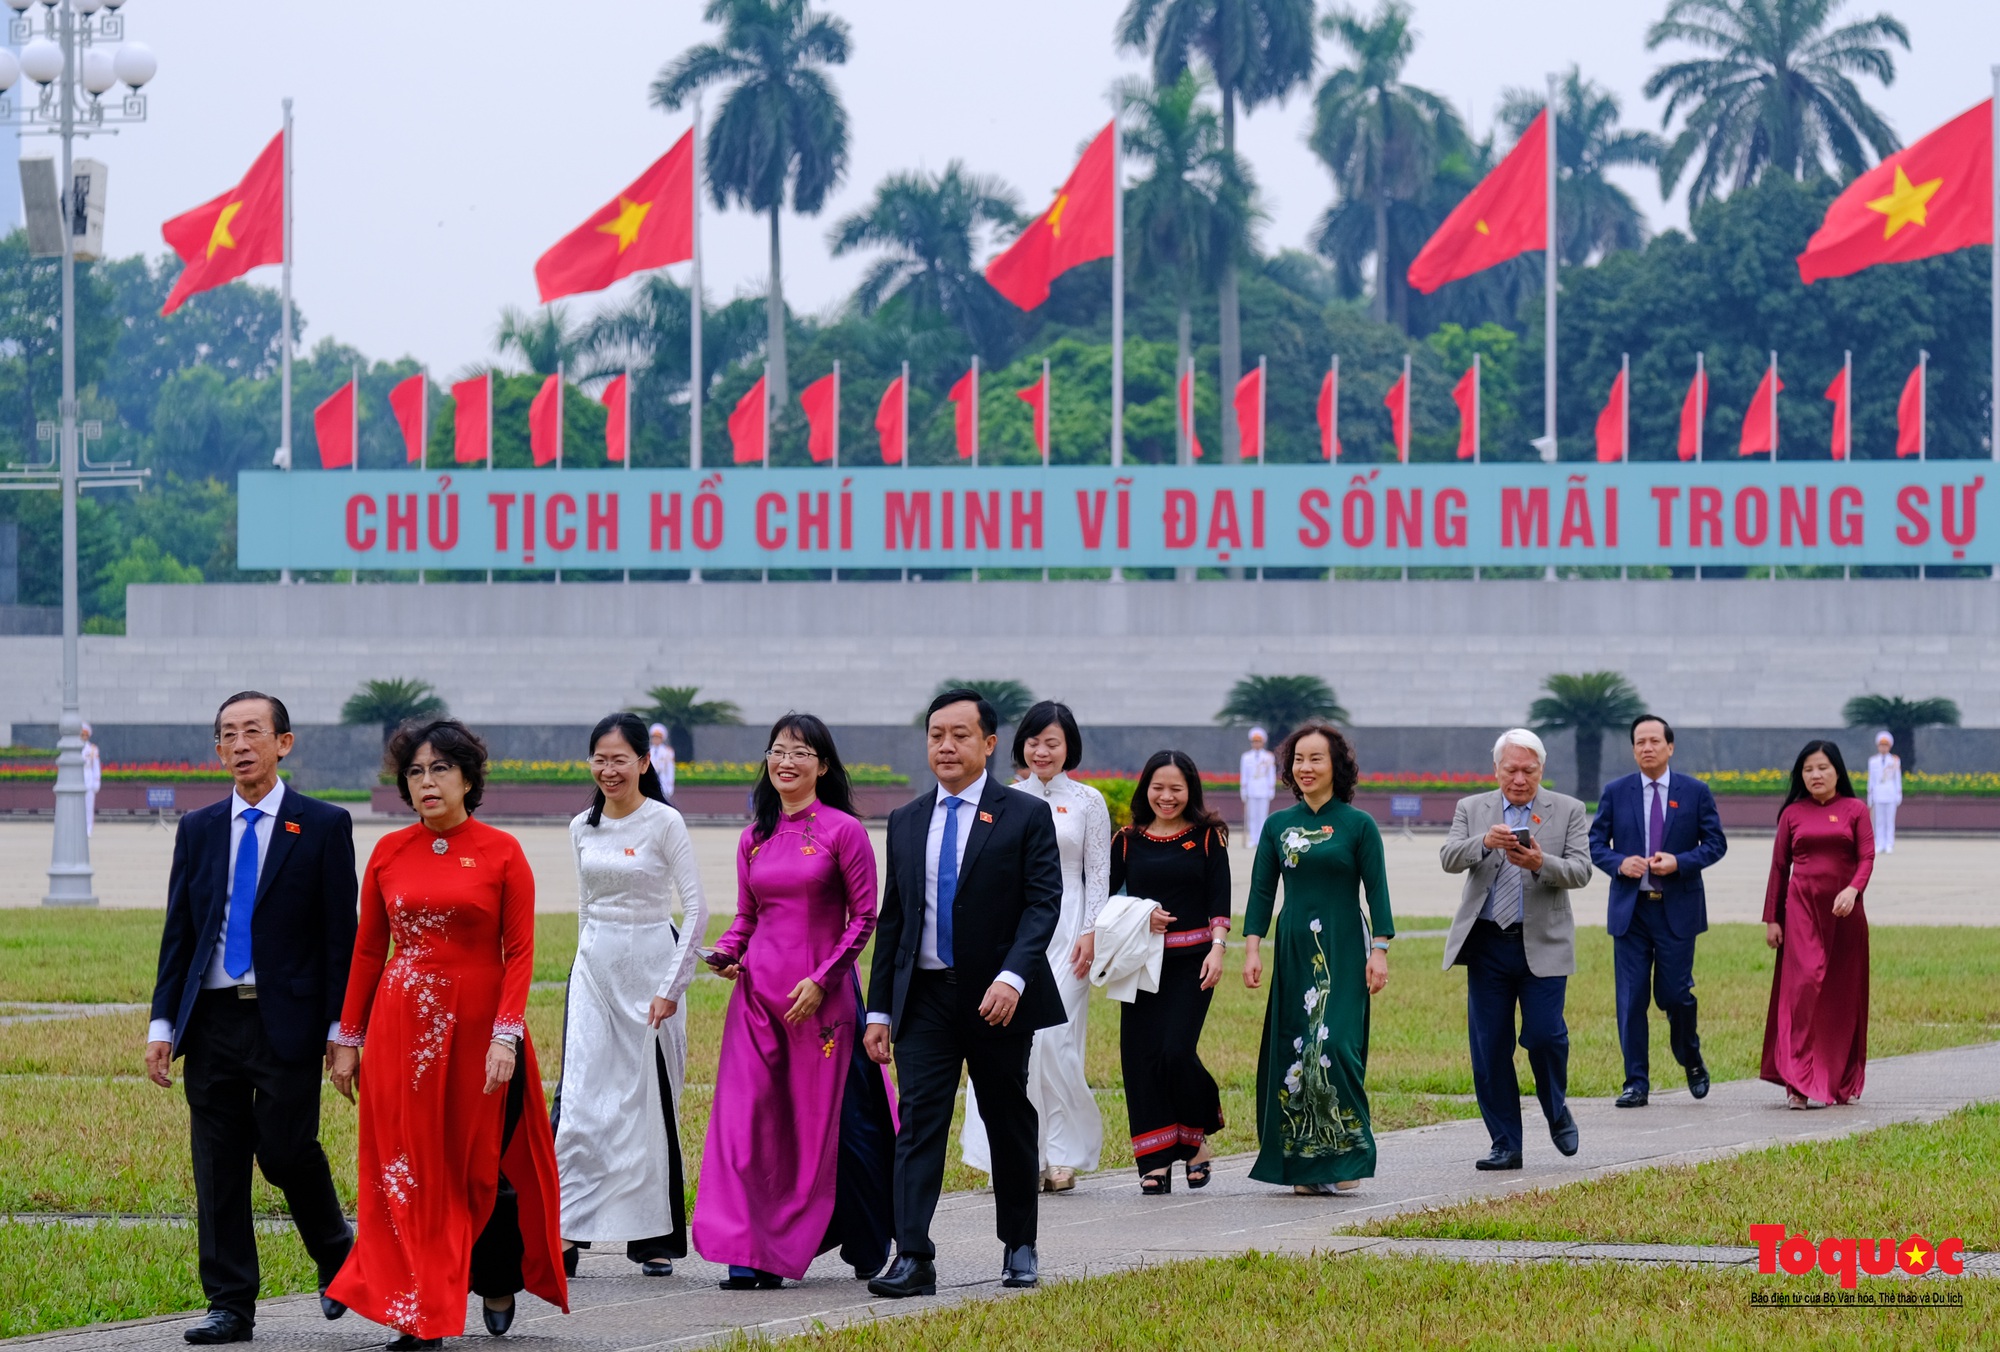 Lãnh đạo Đảng, Nhà nước và đại biểu Quốc hội viếng Chủ tịch Hồ Chí Minh trước khai mạc Kỳ 6 Quốc hội khóa XV - Ảnh 11.